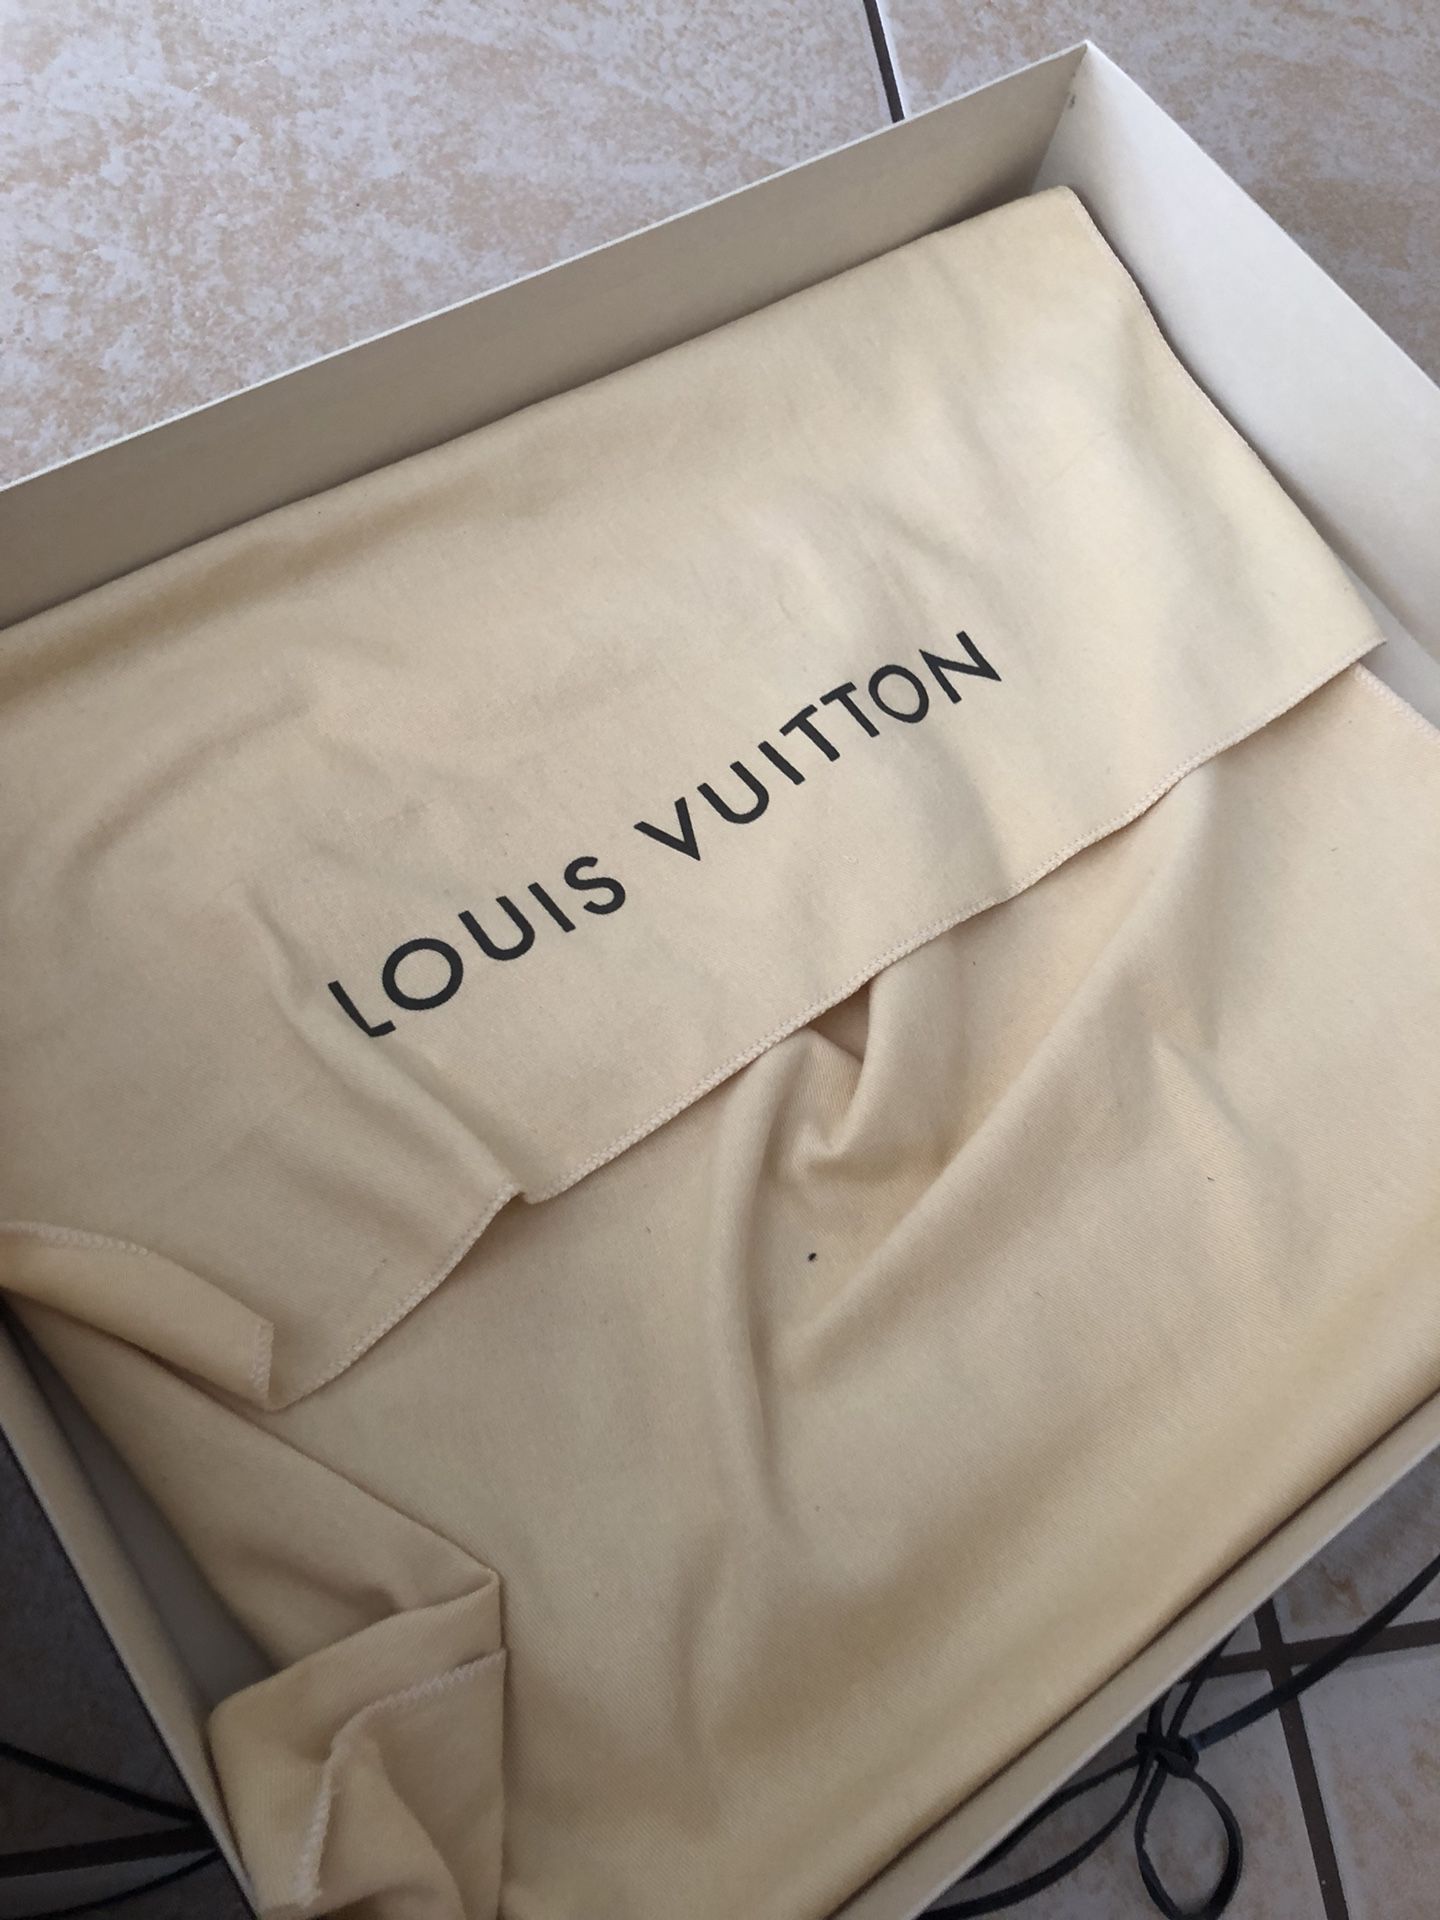 Authentic Louis Vuitton Portobello PM for Sale in San Francisco, CA -  OfferUp